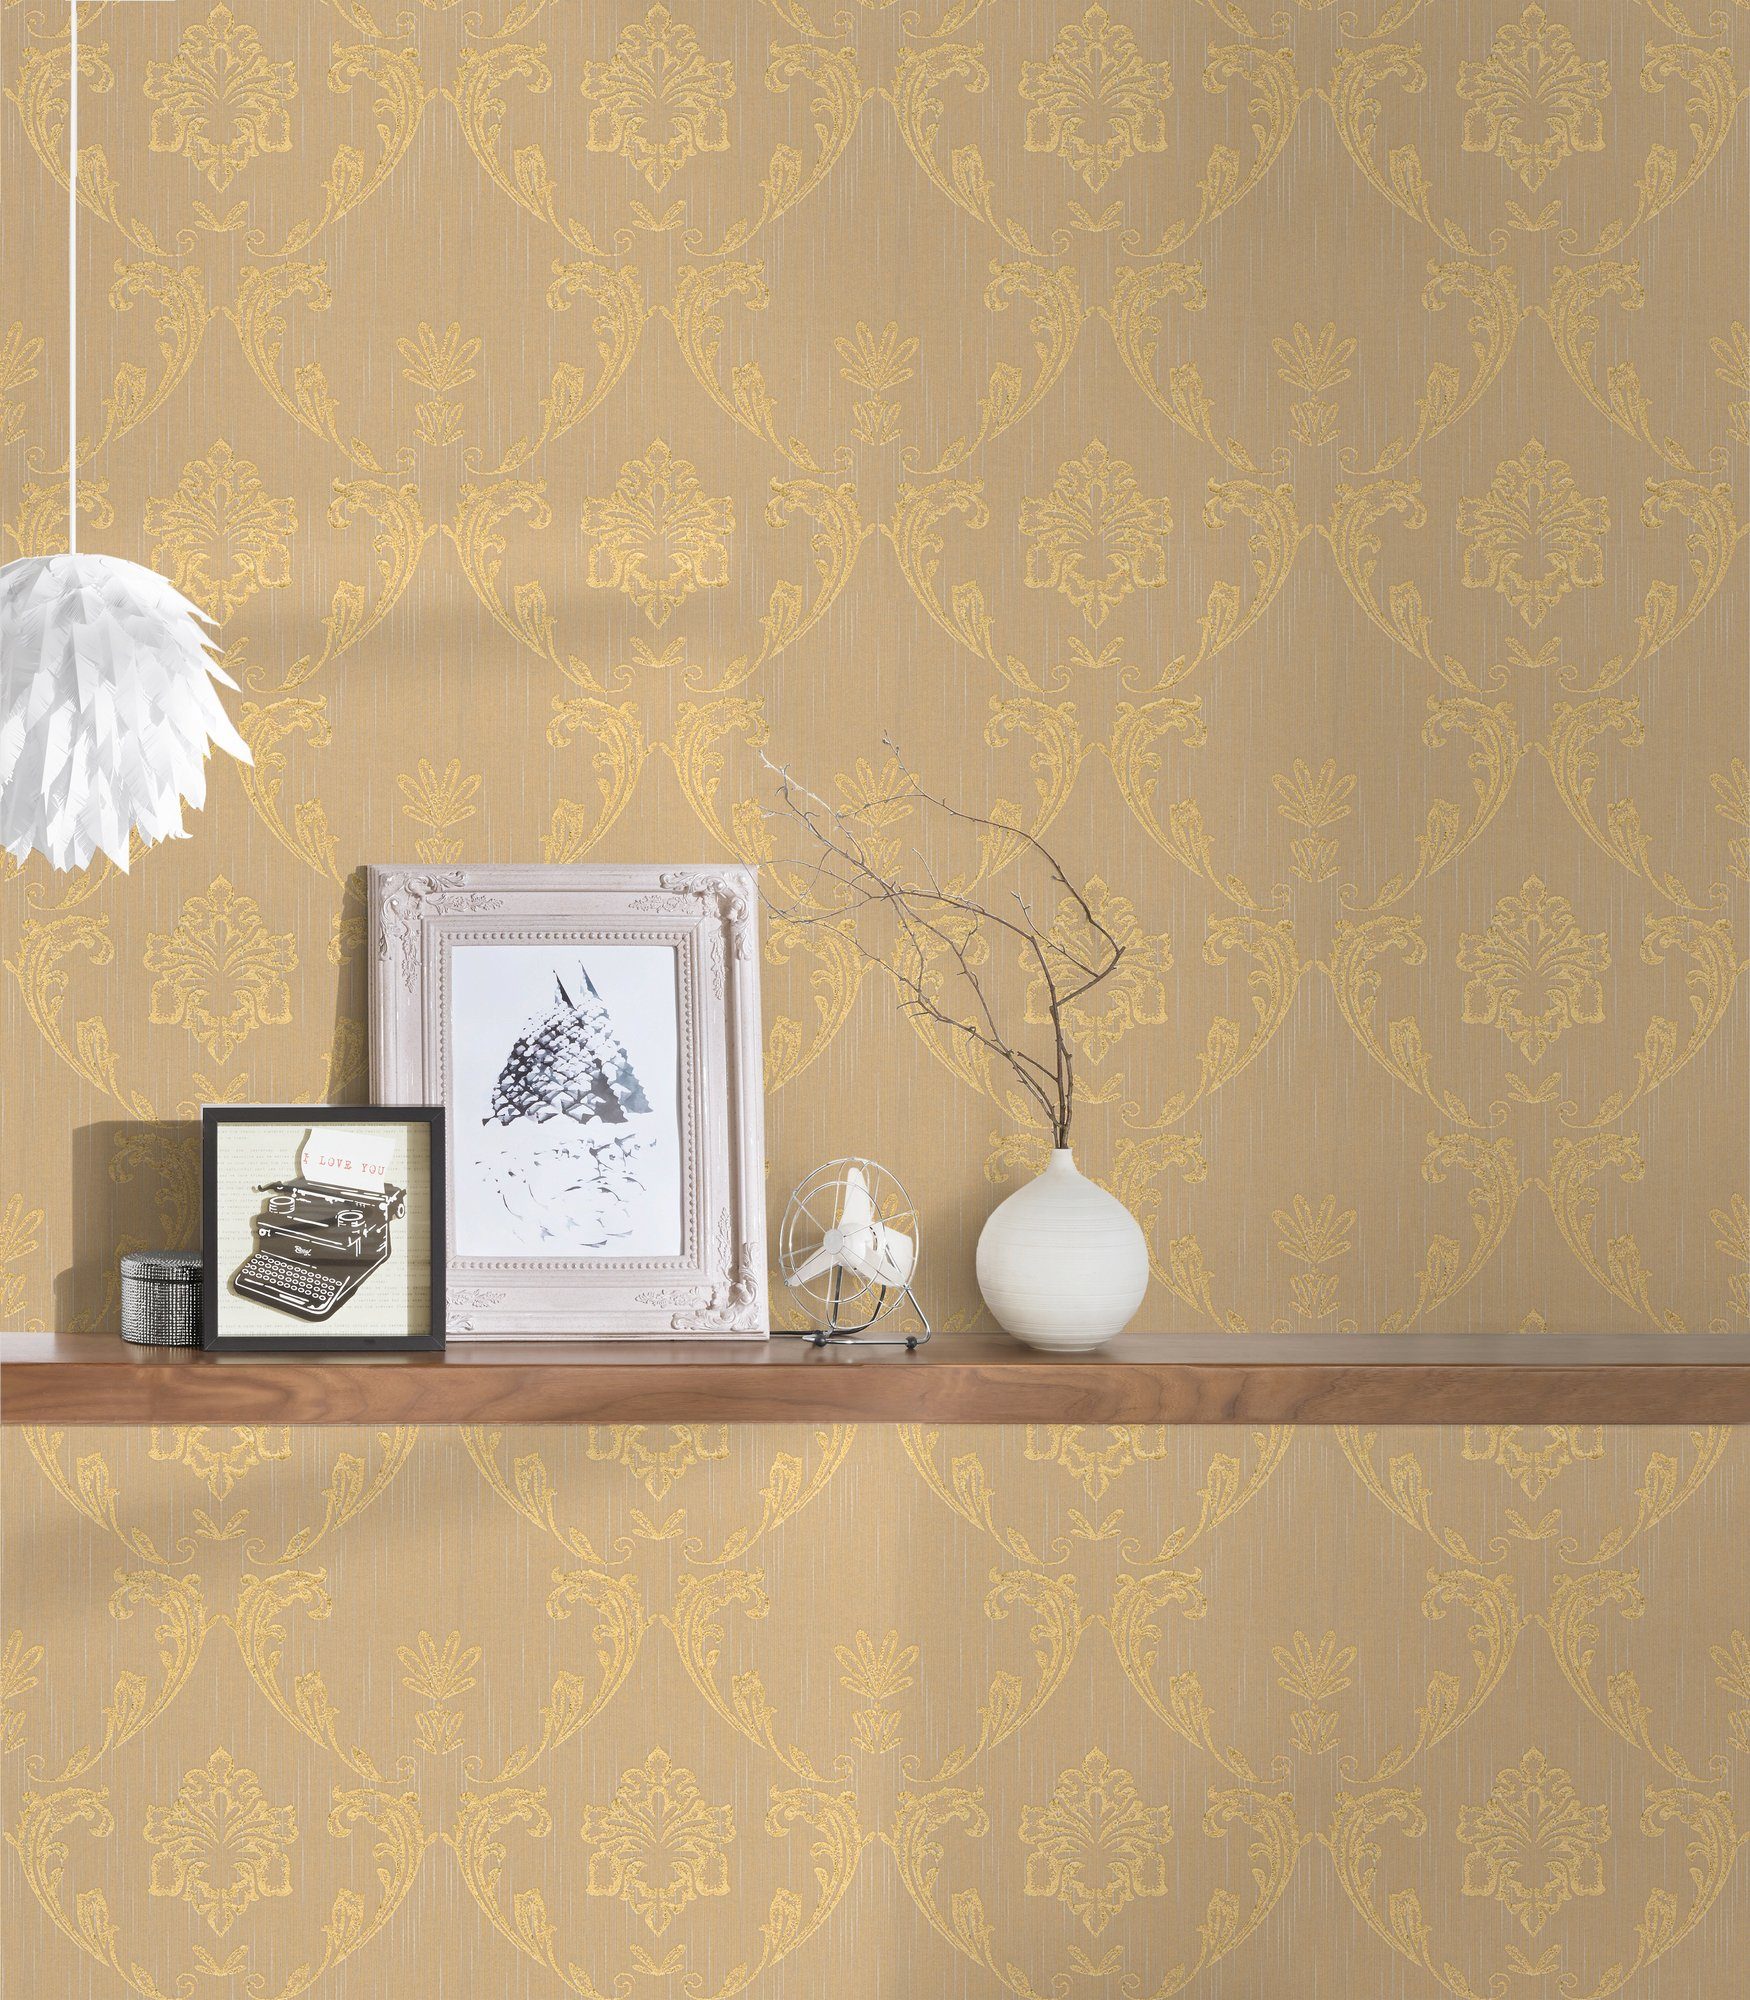 A.S. Création Architects Paper Barock Silk, glänzend, Metallic samtig, Tapete Textiltapete matt, gold/beige Ornament Barock